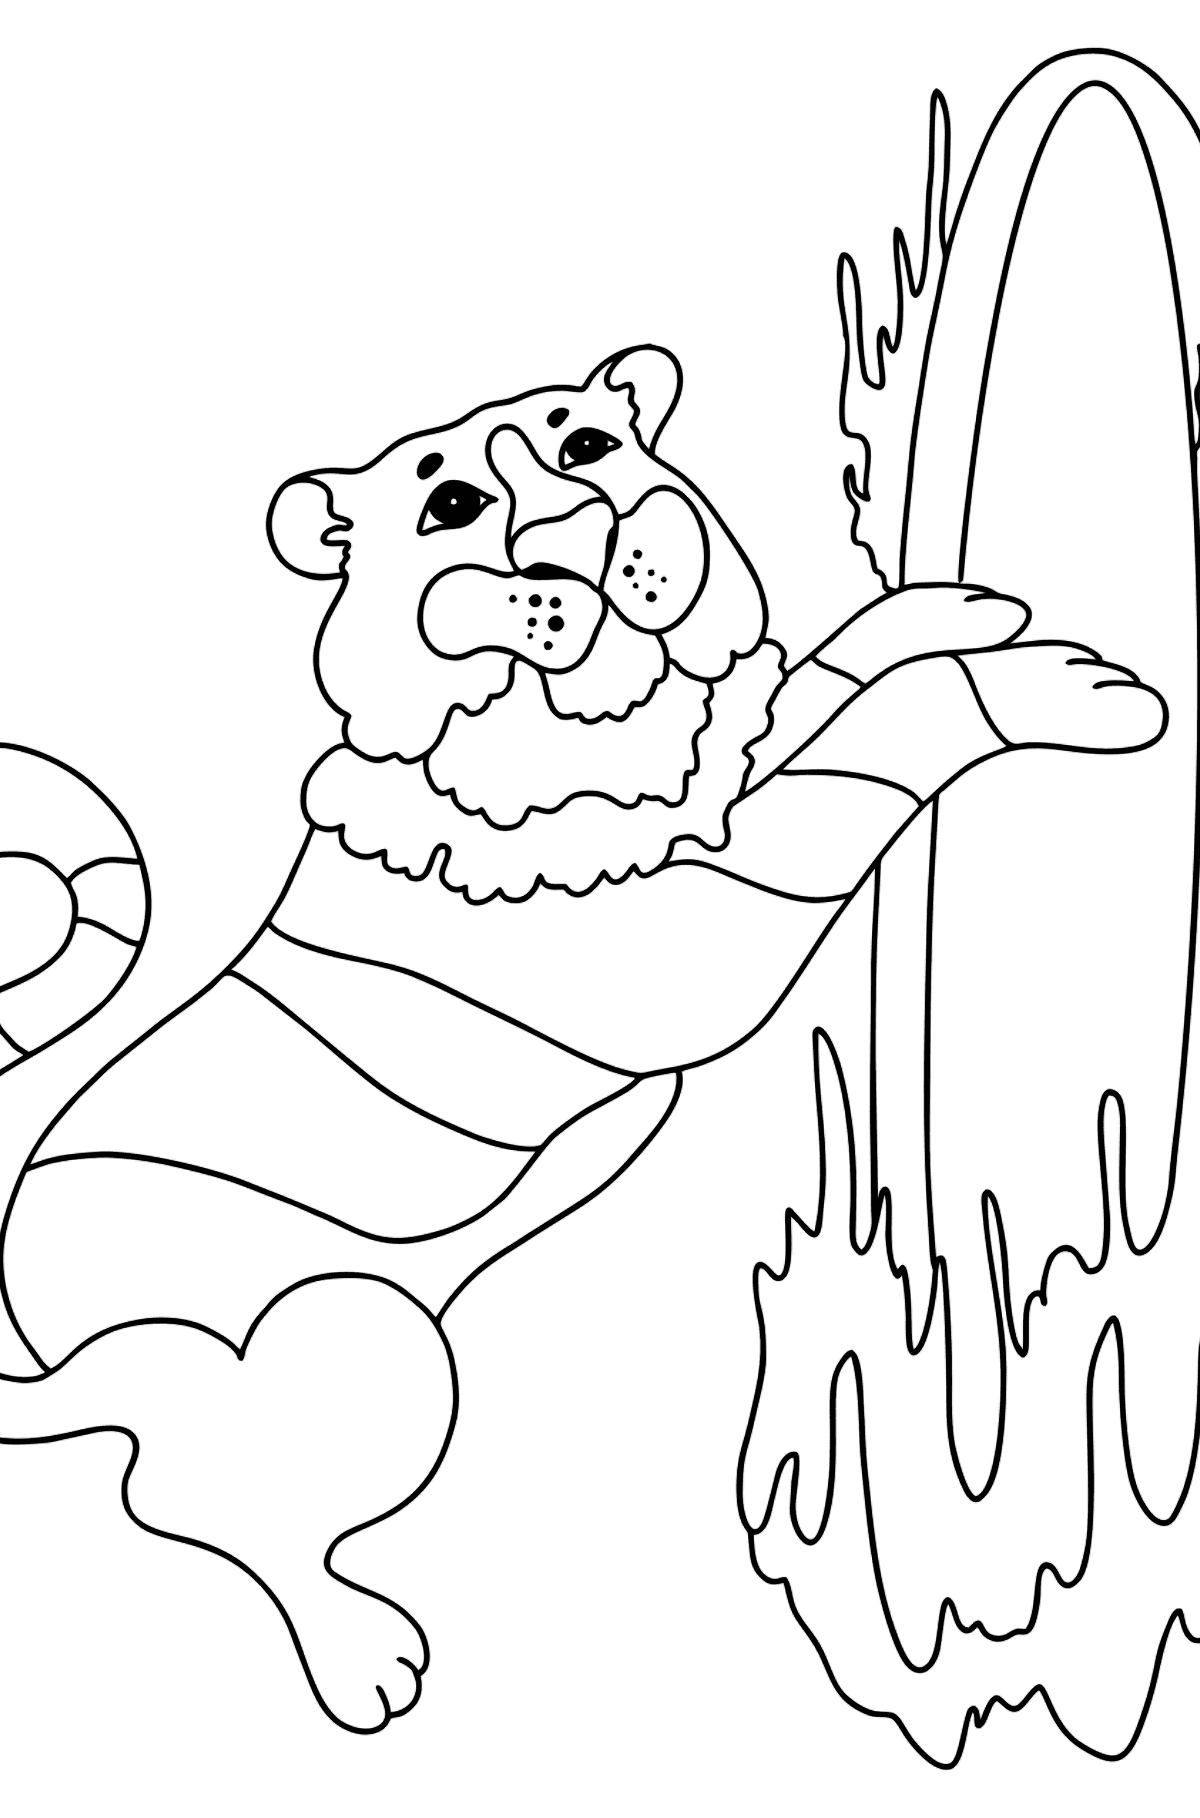 Desen de colorat tigru la circ (dificil) - Desene de colorat pentru copii